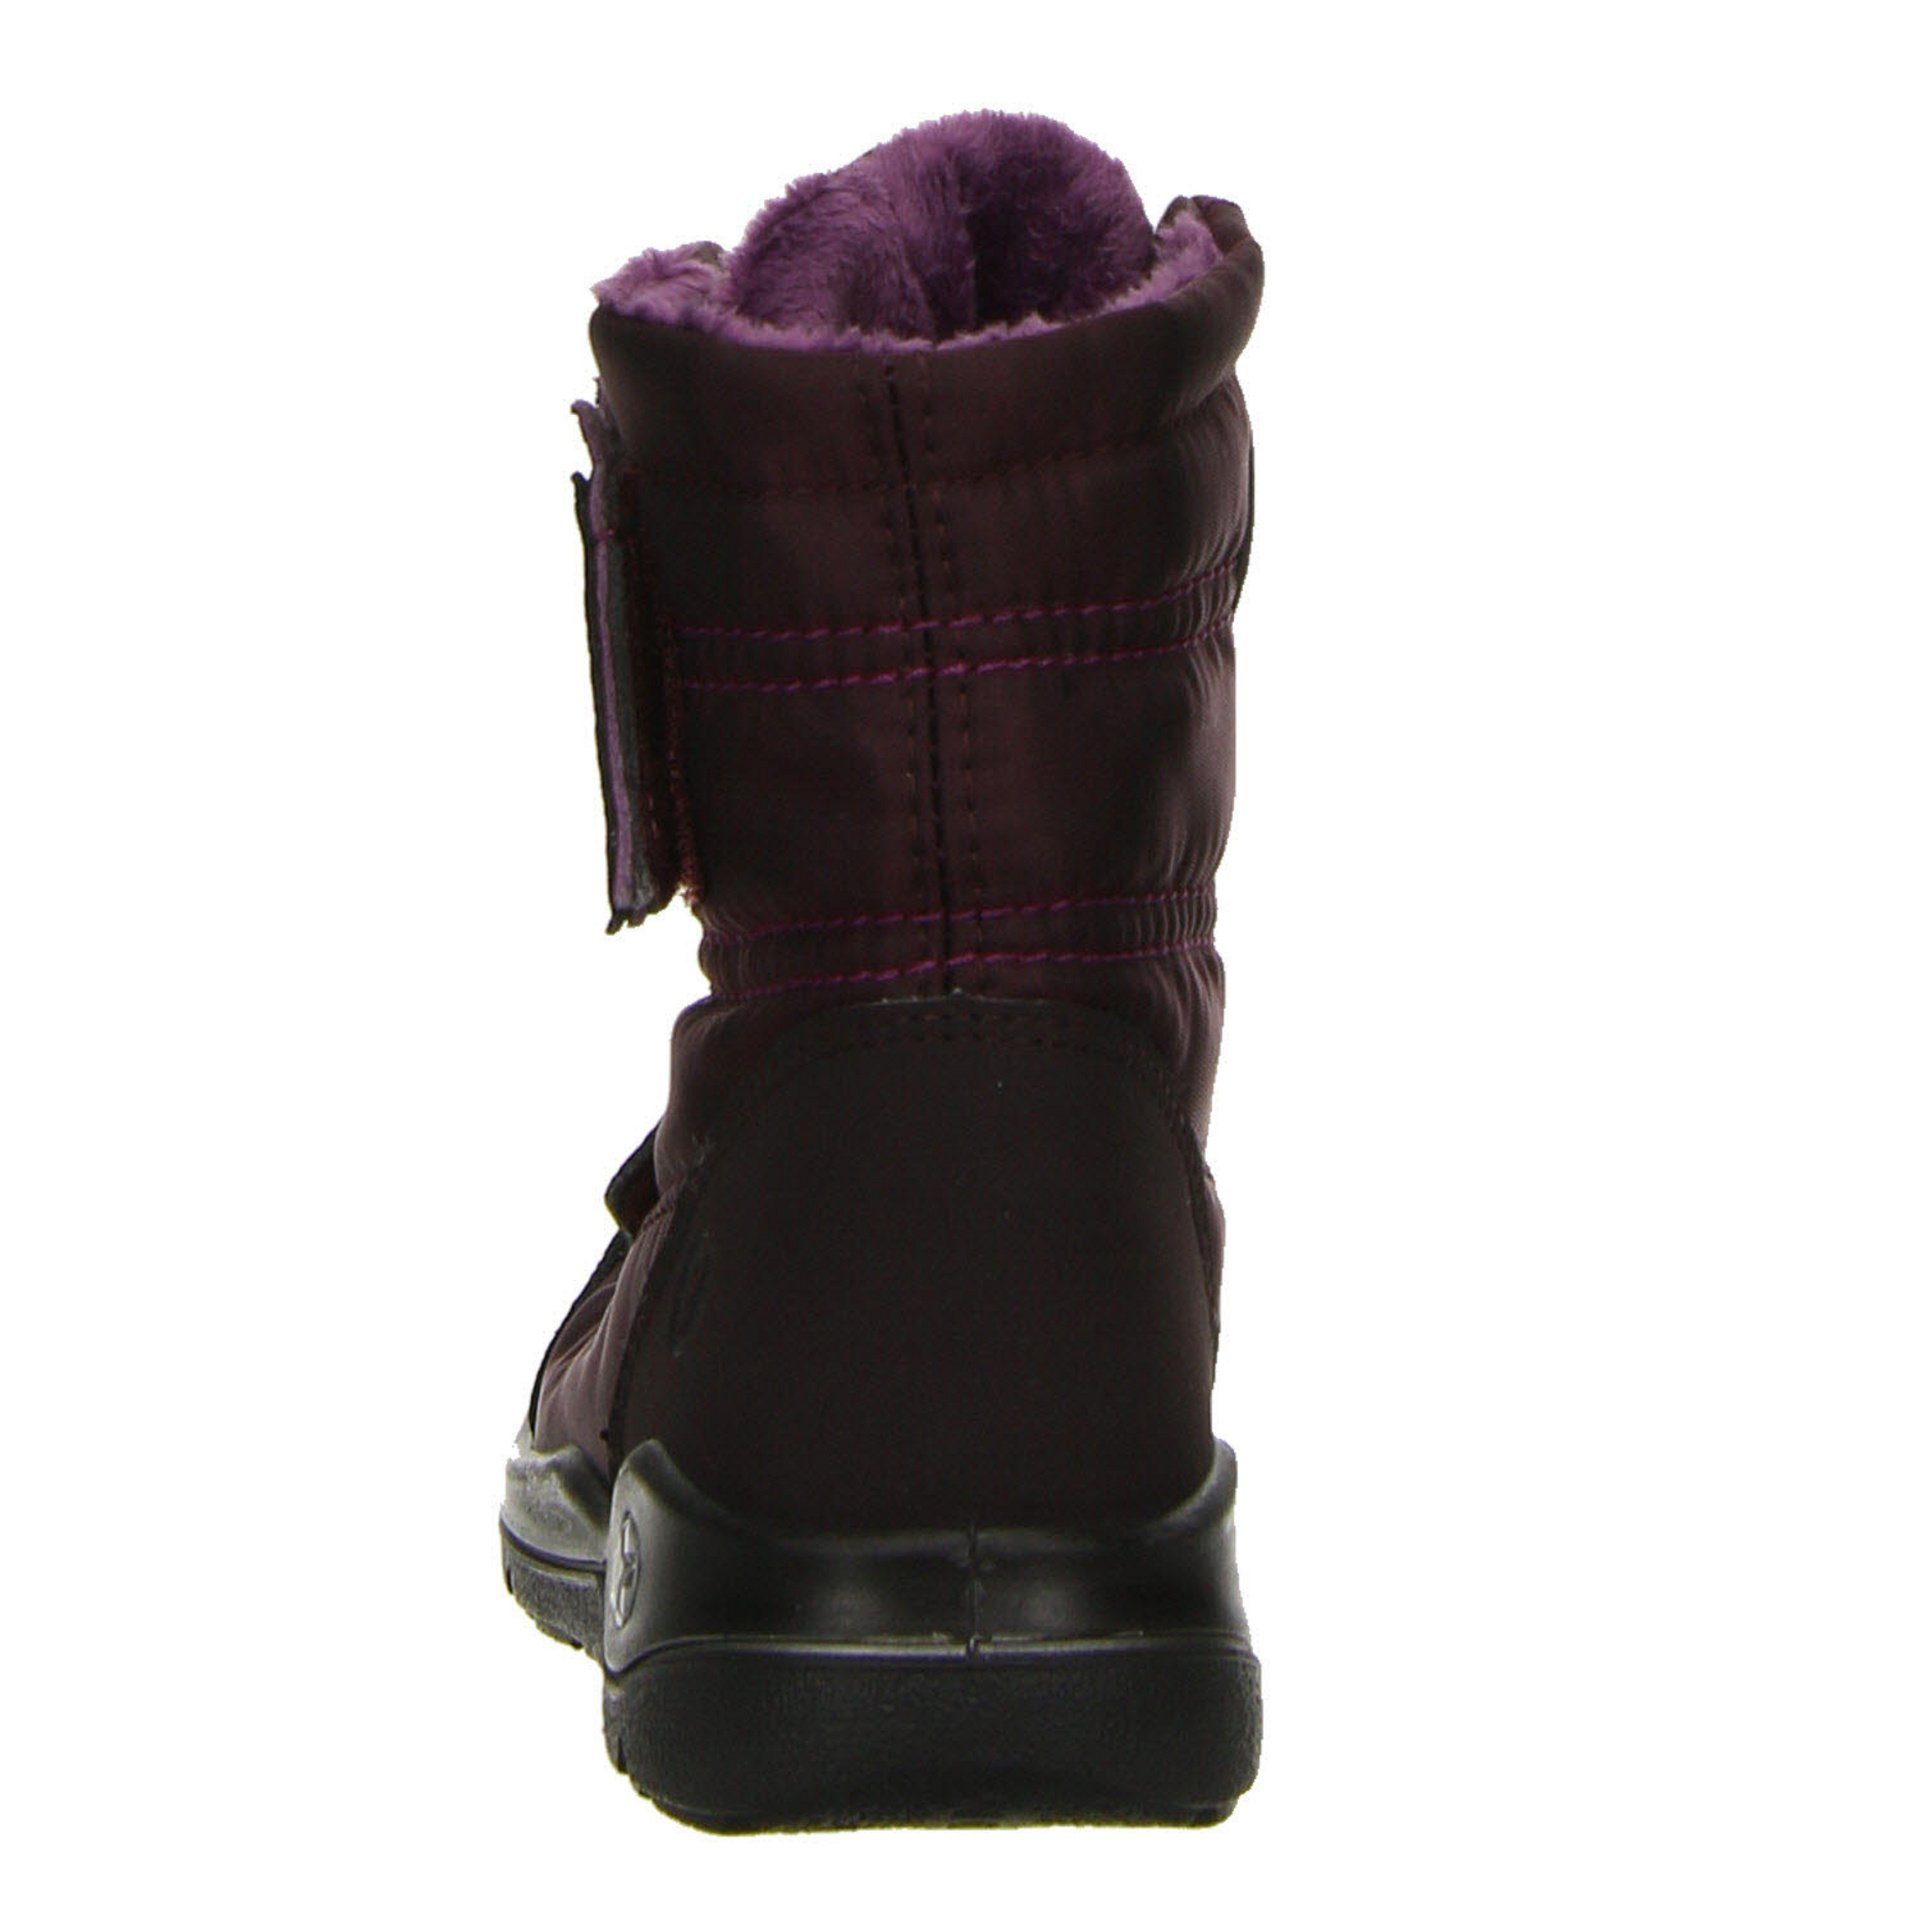 Ricosta Garei Boots Textil Bordeaux Textil Stiefel uni